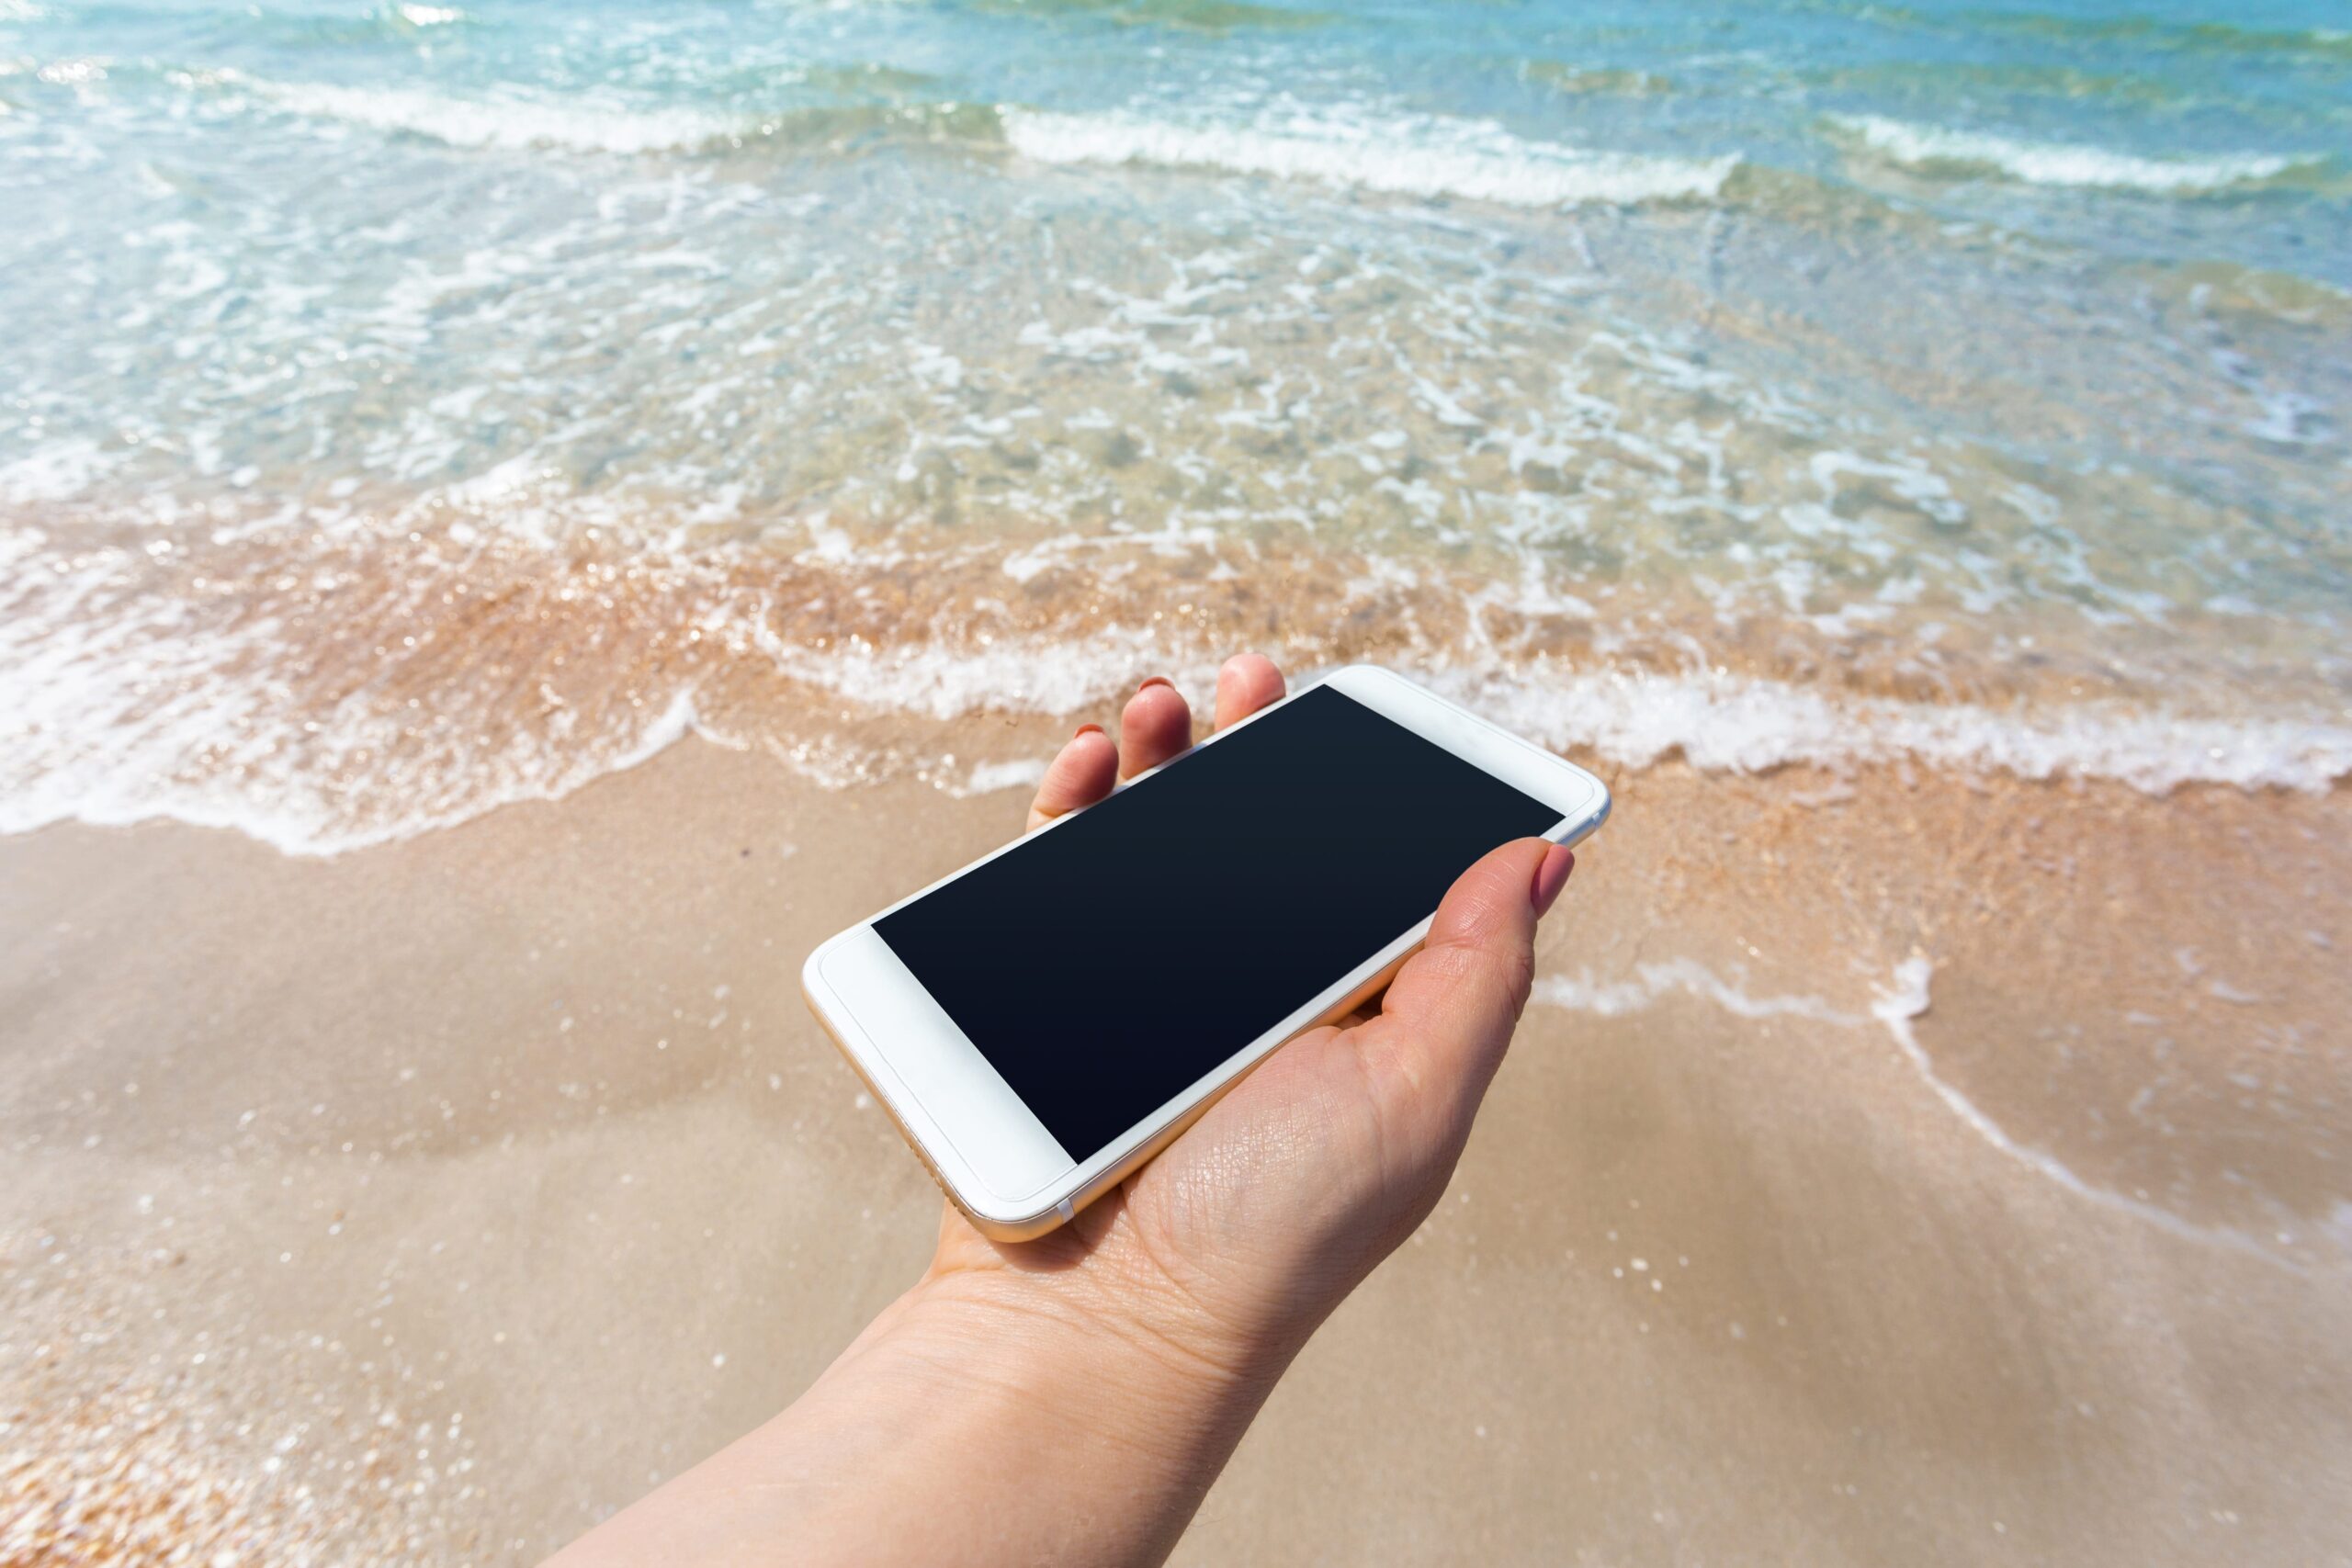 Black Friday é na Wave Cell: iPhone ou Xiaomi seminovos com qualidade